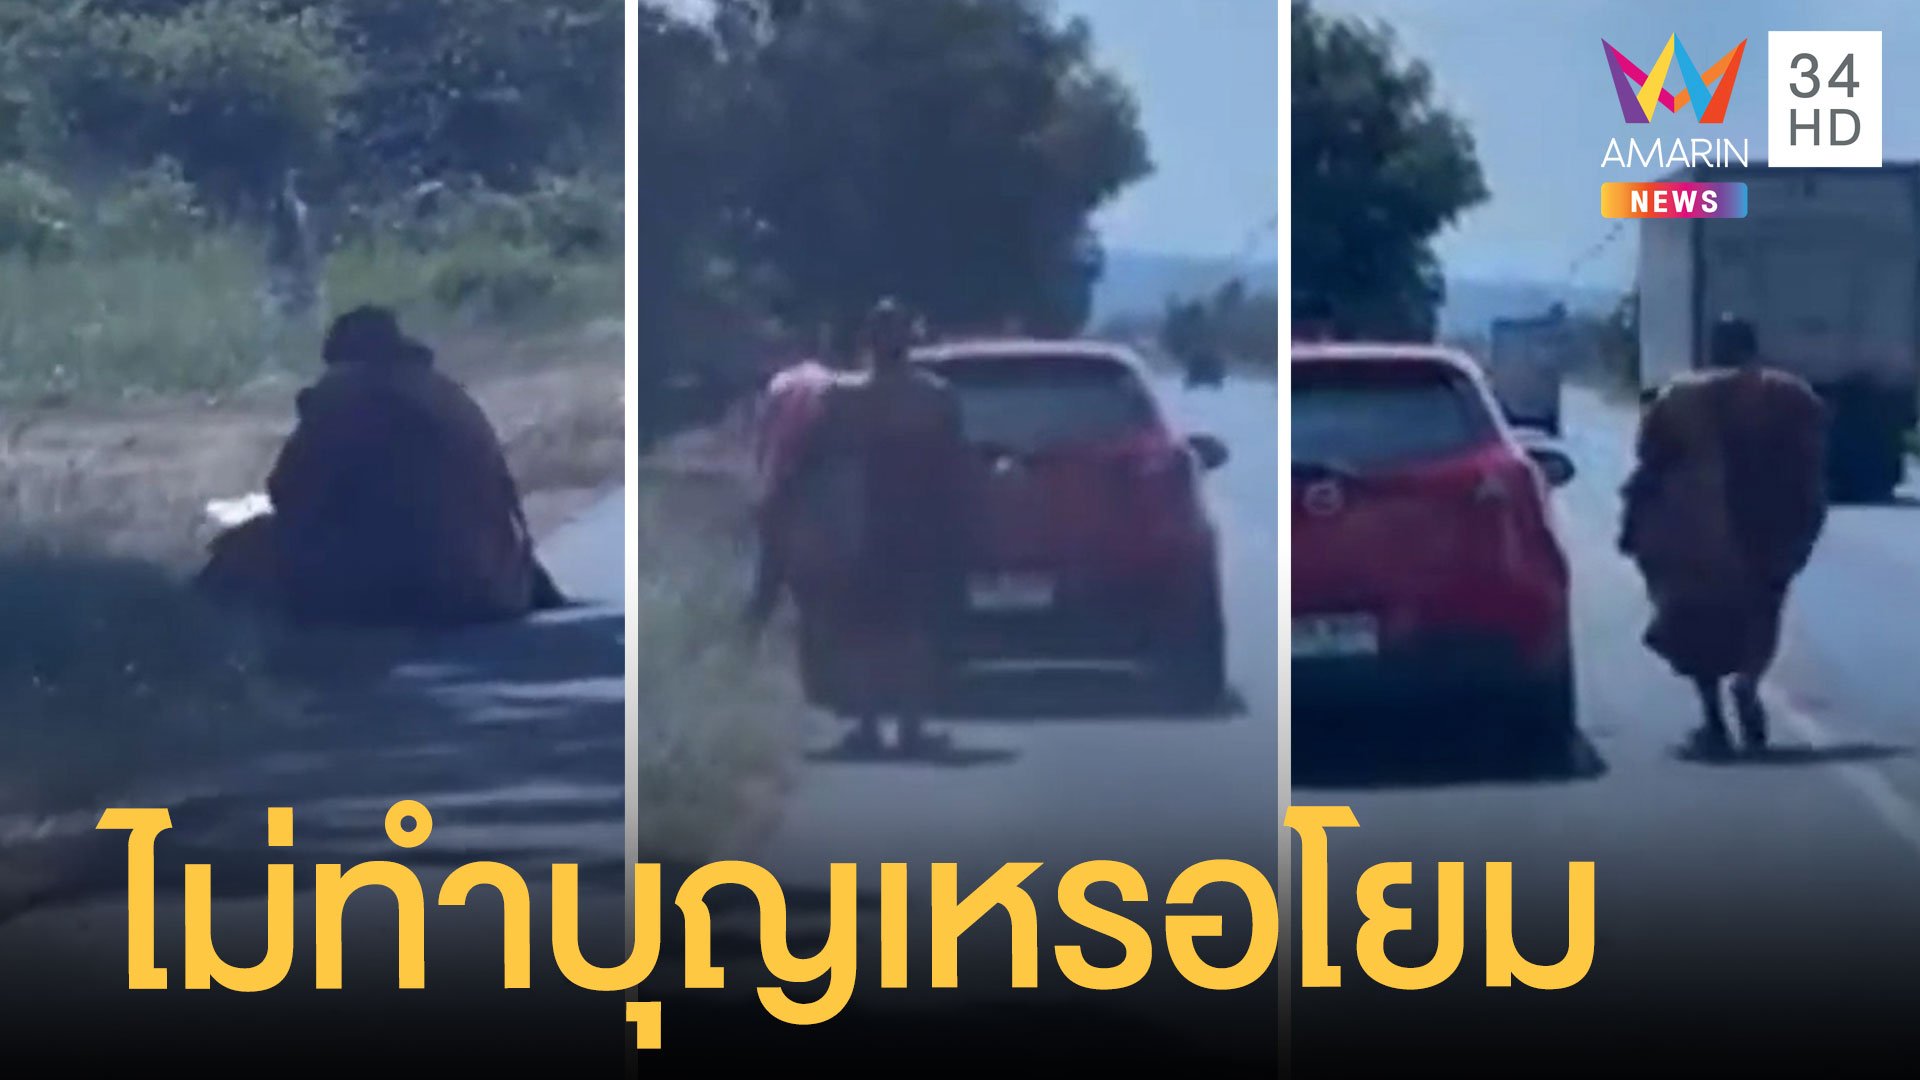 พระโบกรถชาวบ้านขอติดรถไปด้วย แถมยังขอปัจจัย | ข่าวอรุณอมรินทร์ | 22 พ.ย. 64 | AMARIN TVHD34